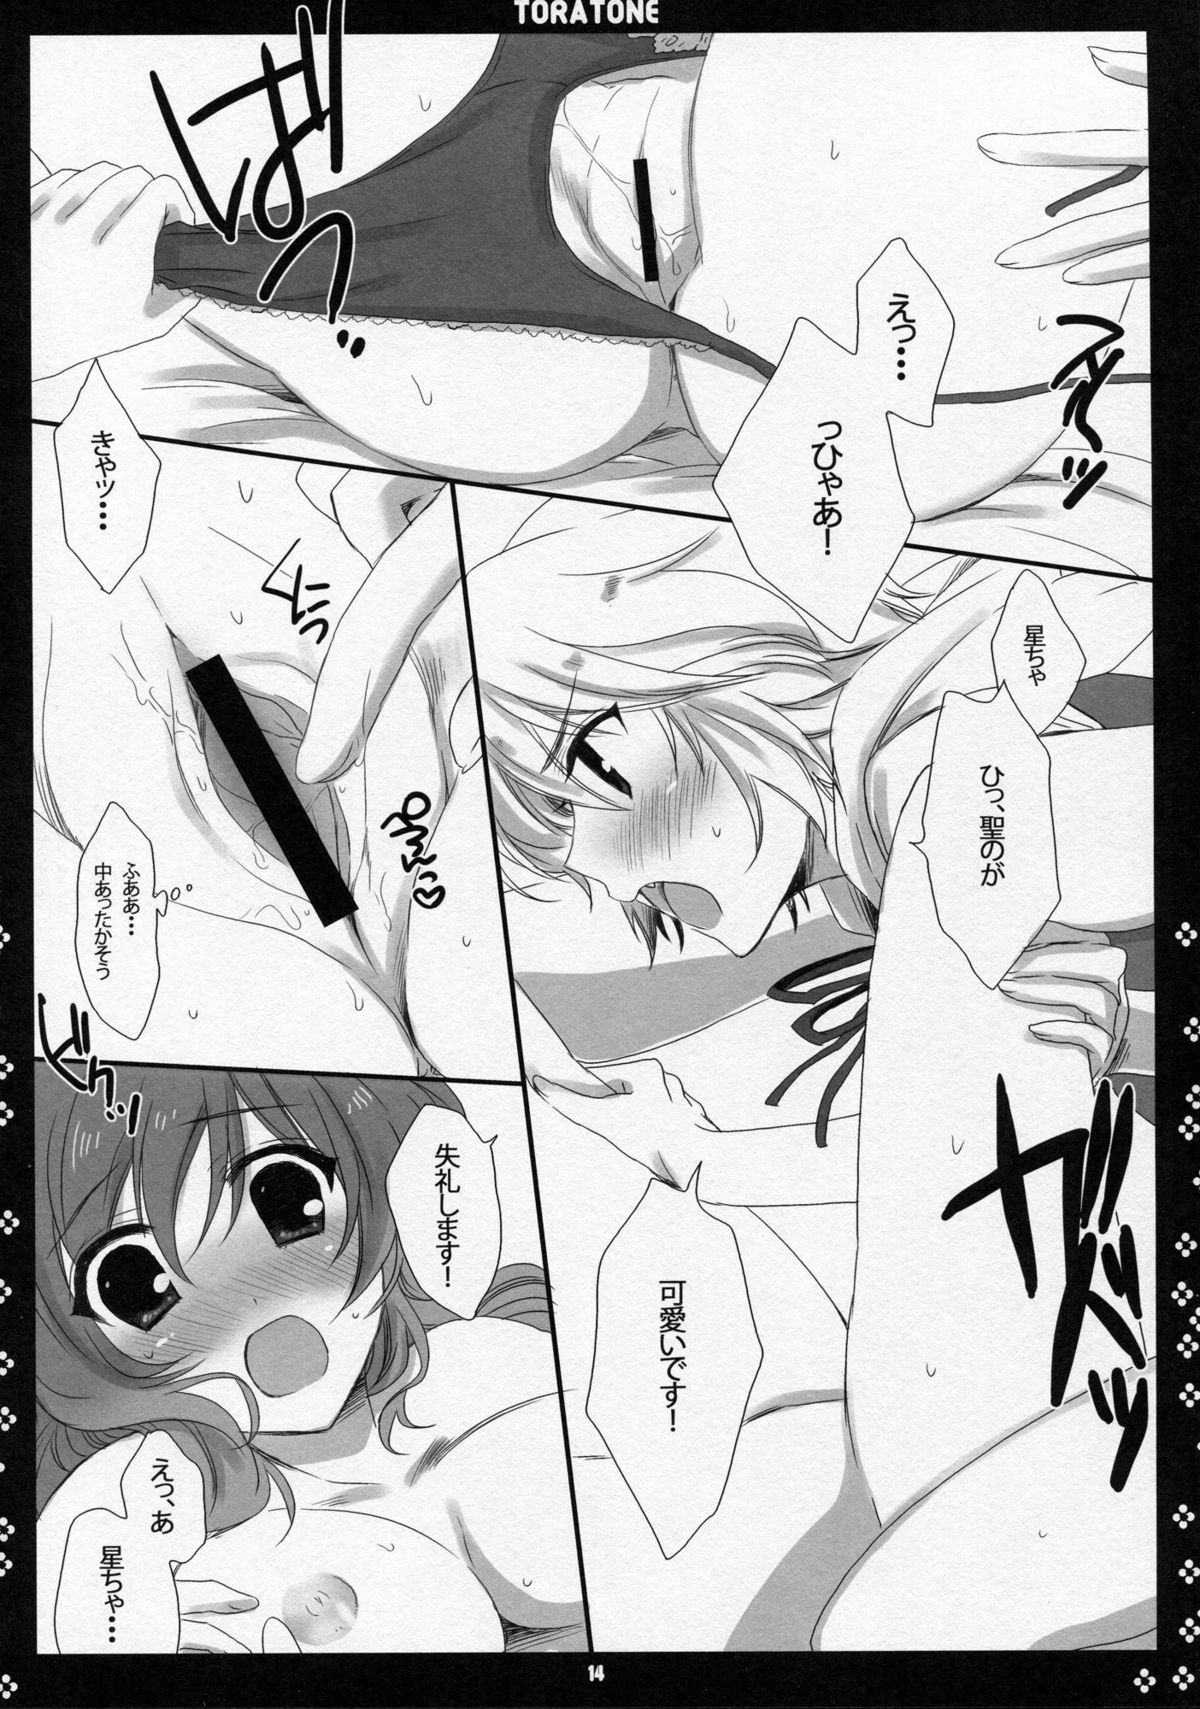 (Kouroumu 5) [Nimame (Nakayama Miyuki)] TORATONE (Touhou Project) page 13 full